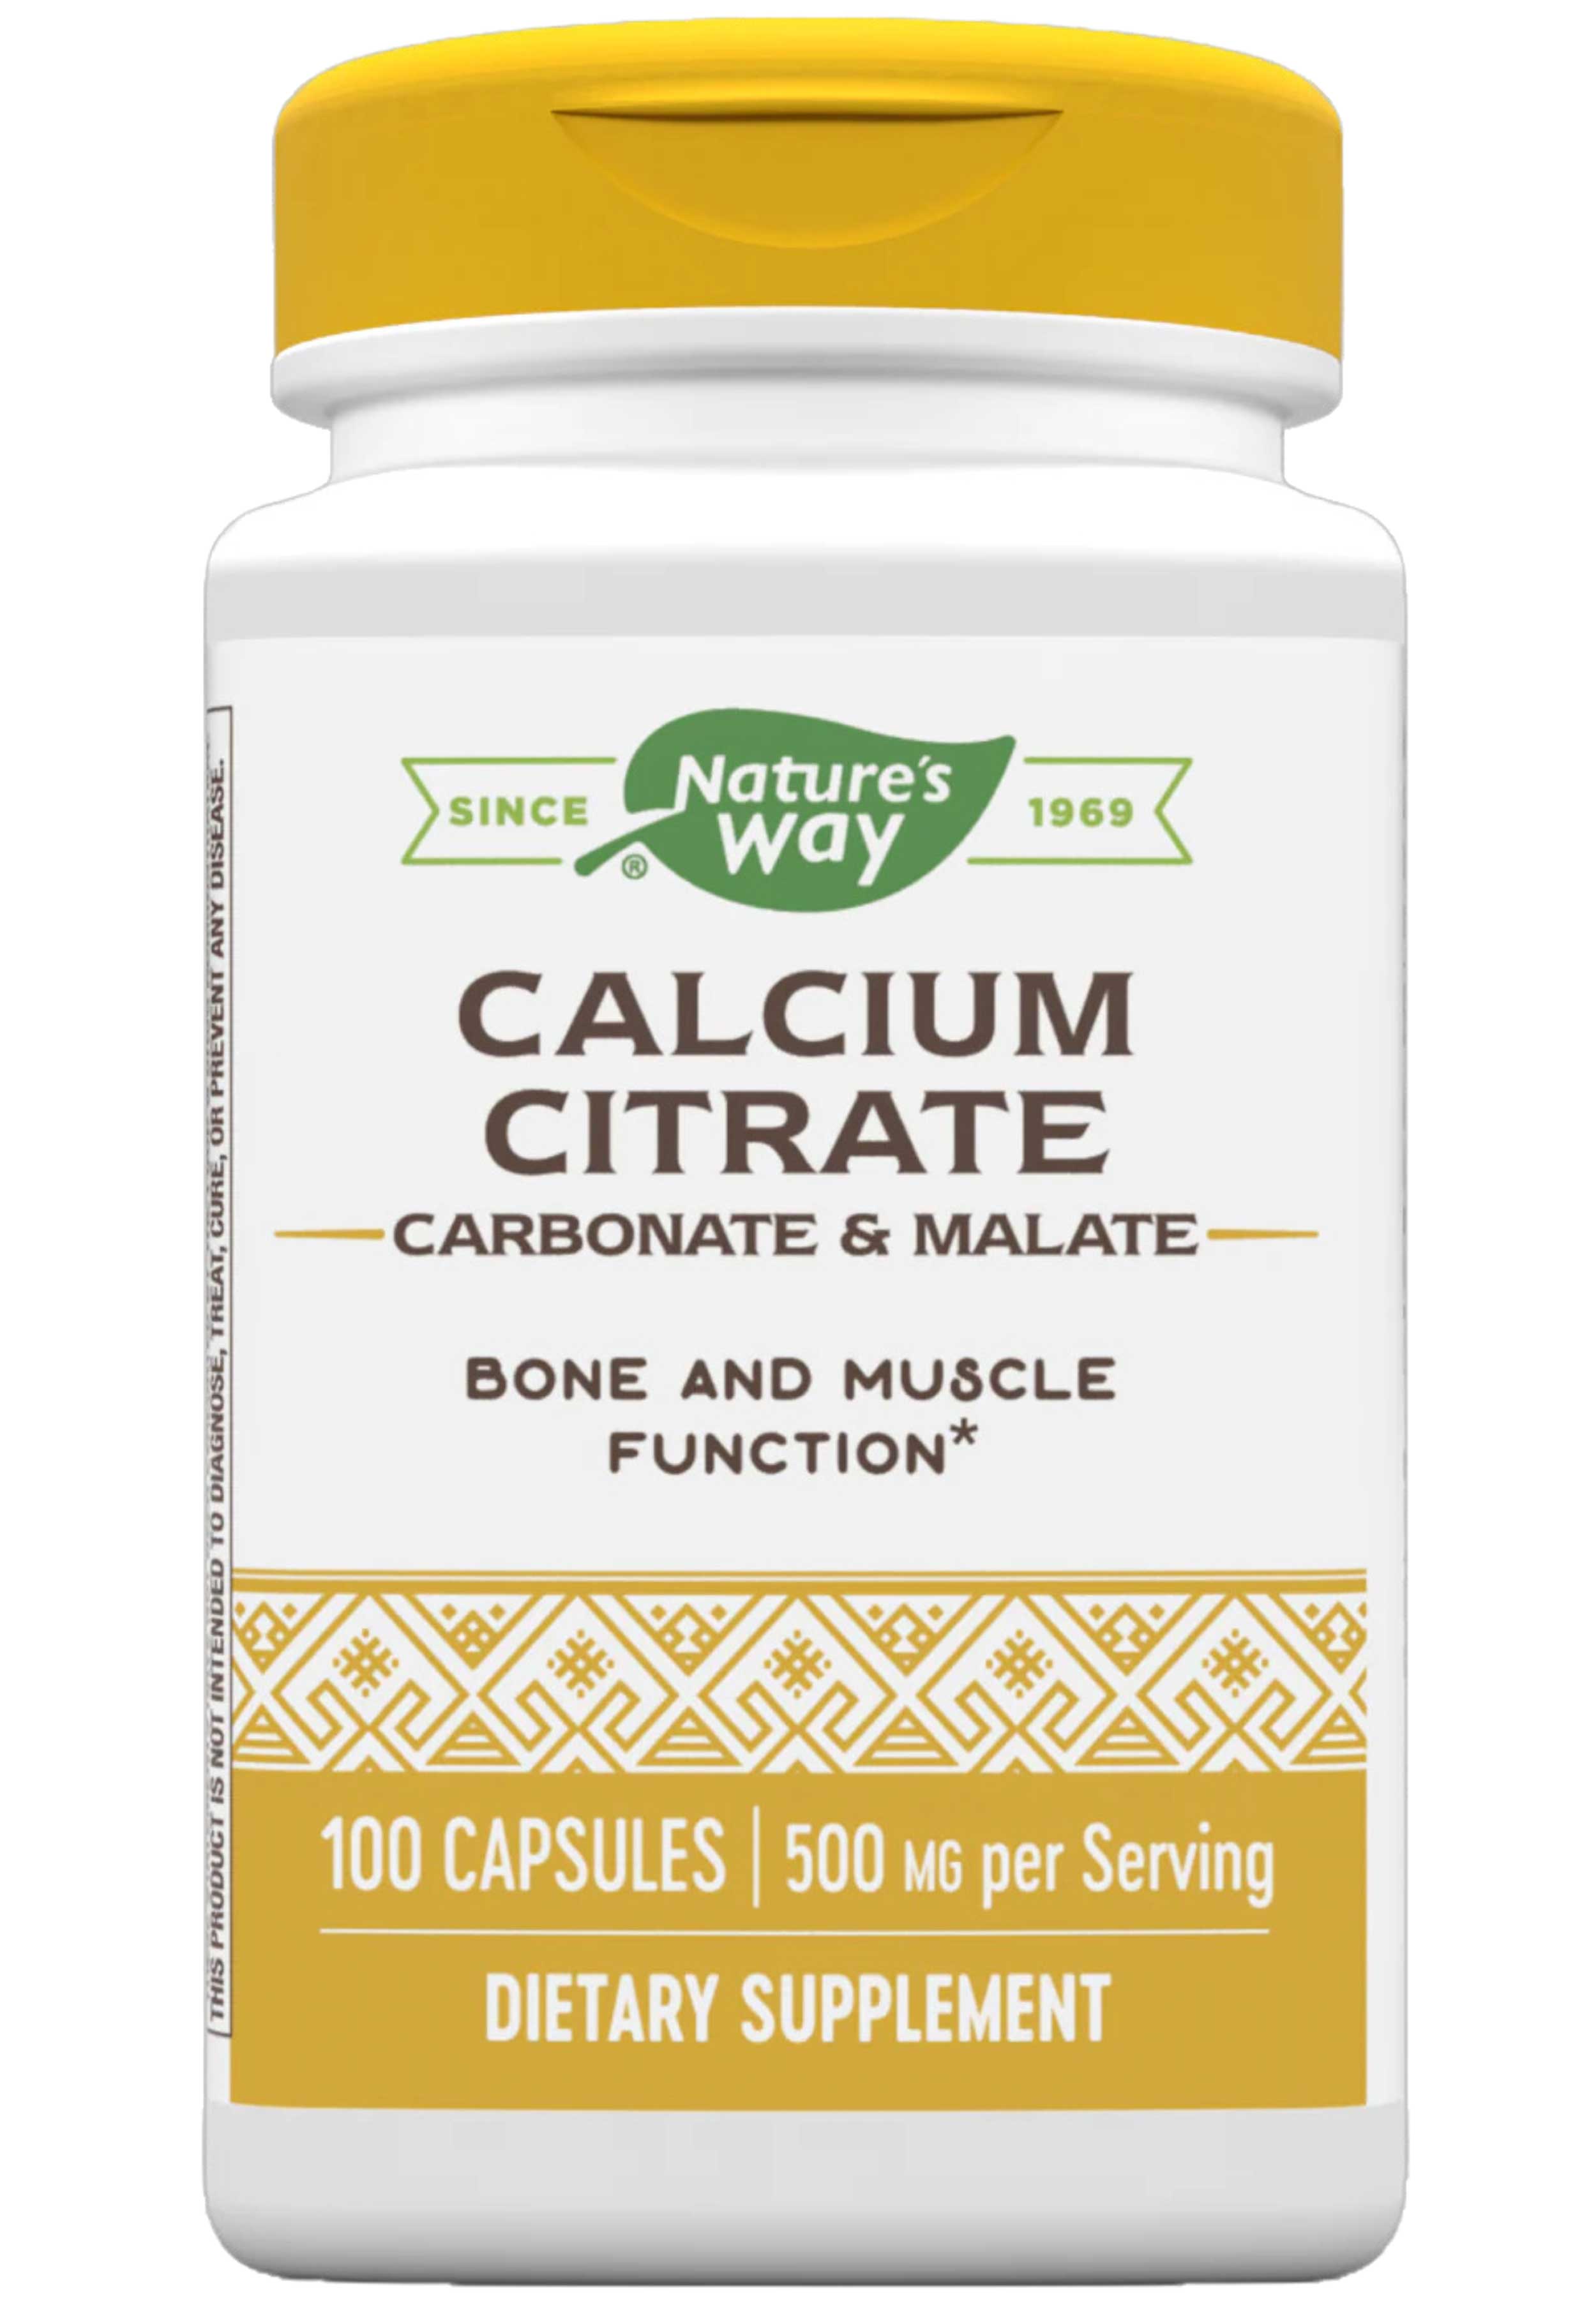 Nature's Way Calcium Citrate